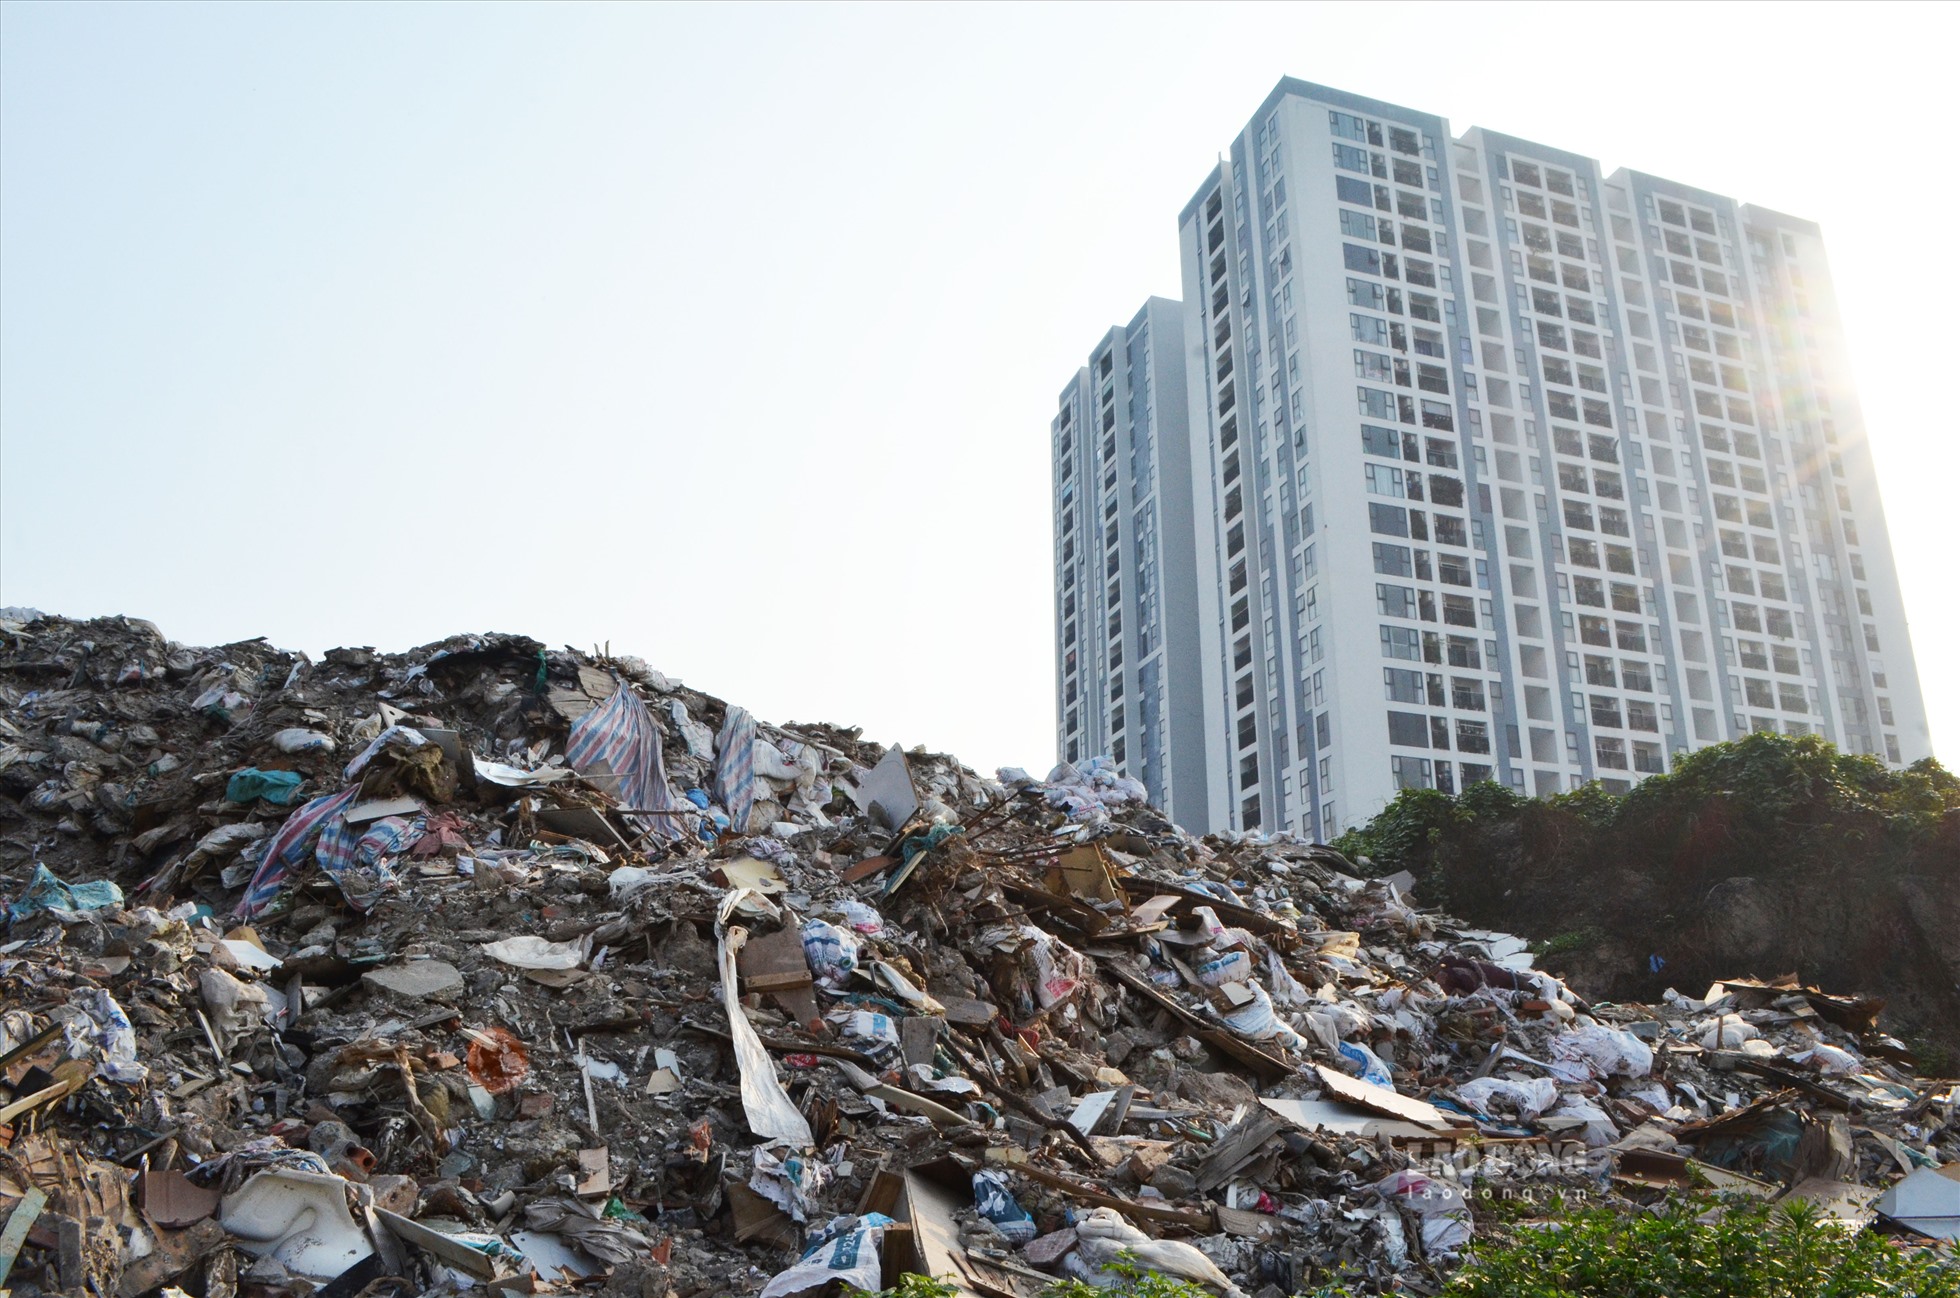 Núi rác cao hàng chục mét với đủ các loại rác thải, bốc mùi hôi thối. Chị Linh, cư dân của tòa nhà cho hay, bãi phế thải đã tồn tại nhiều năm qua. Khói bay cùng mùi khó chịu vào những tòa nhà là điều không thể tránh khỏi.